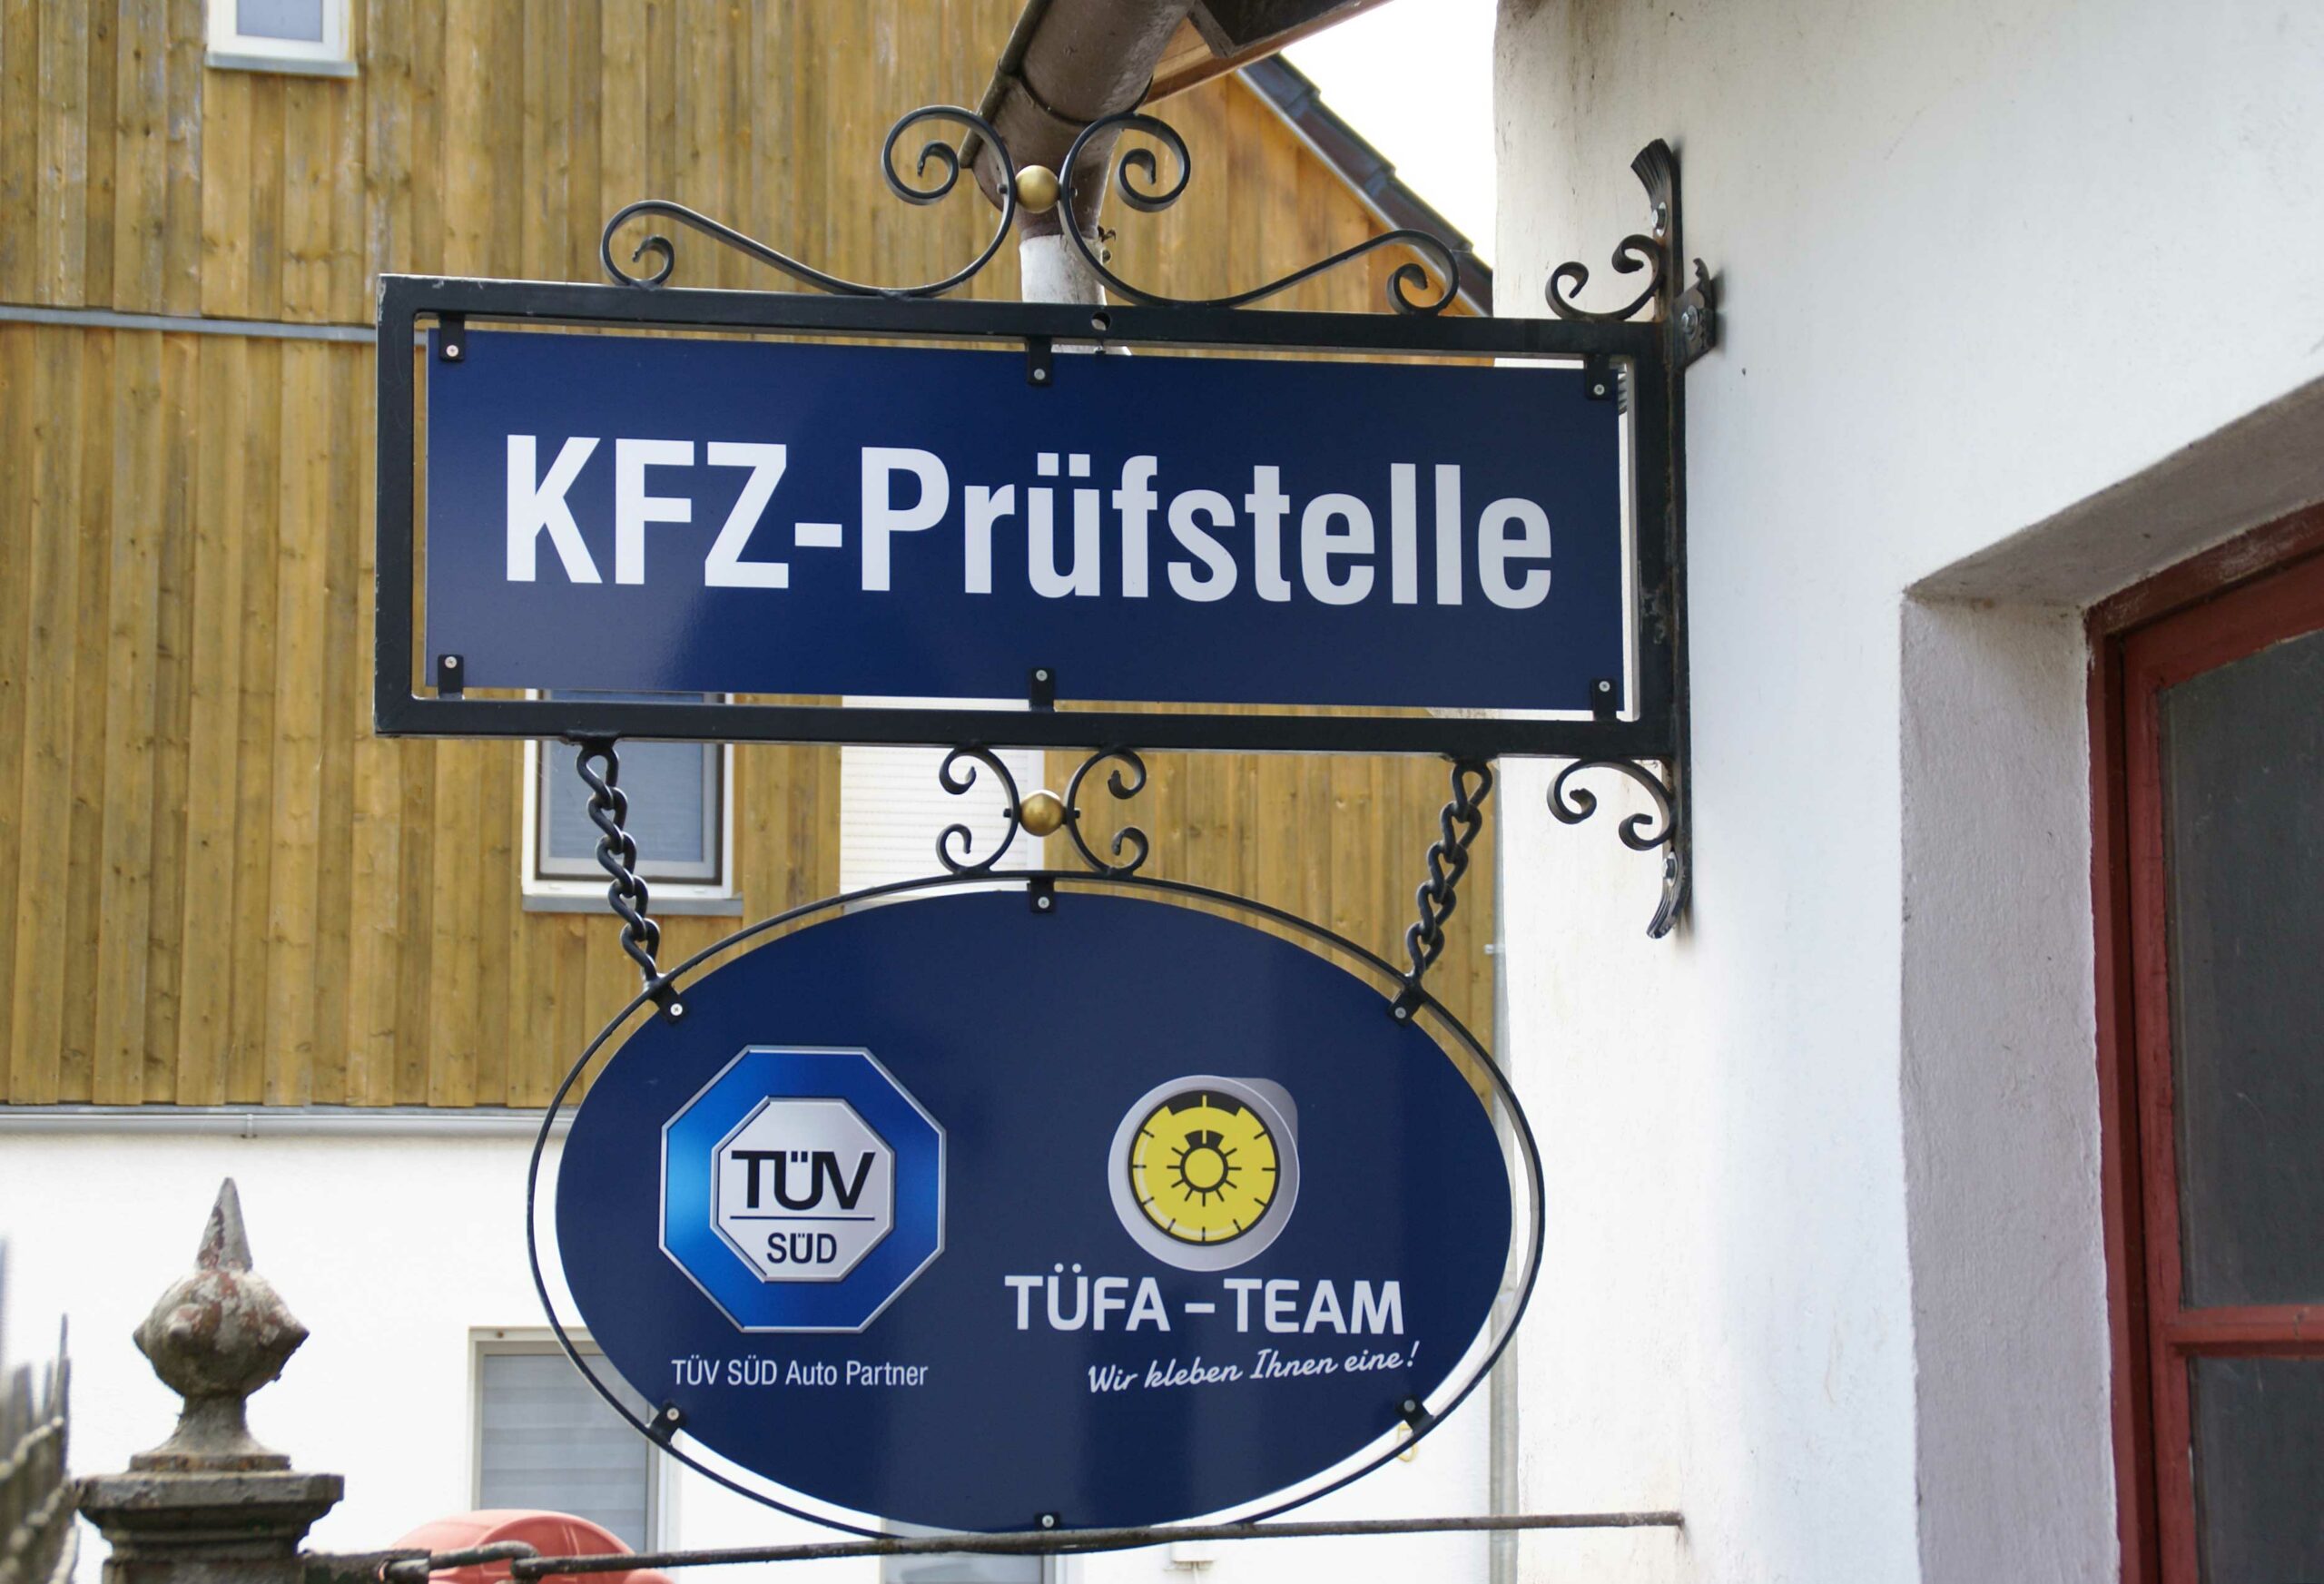 Kfz-Prüfstelle in Hungen – TÜFA-TEAM